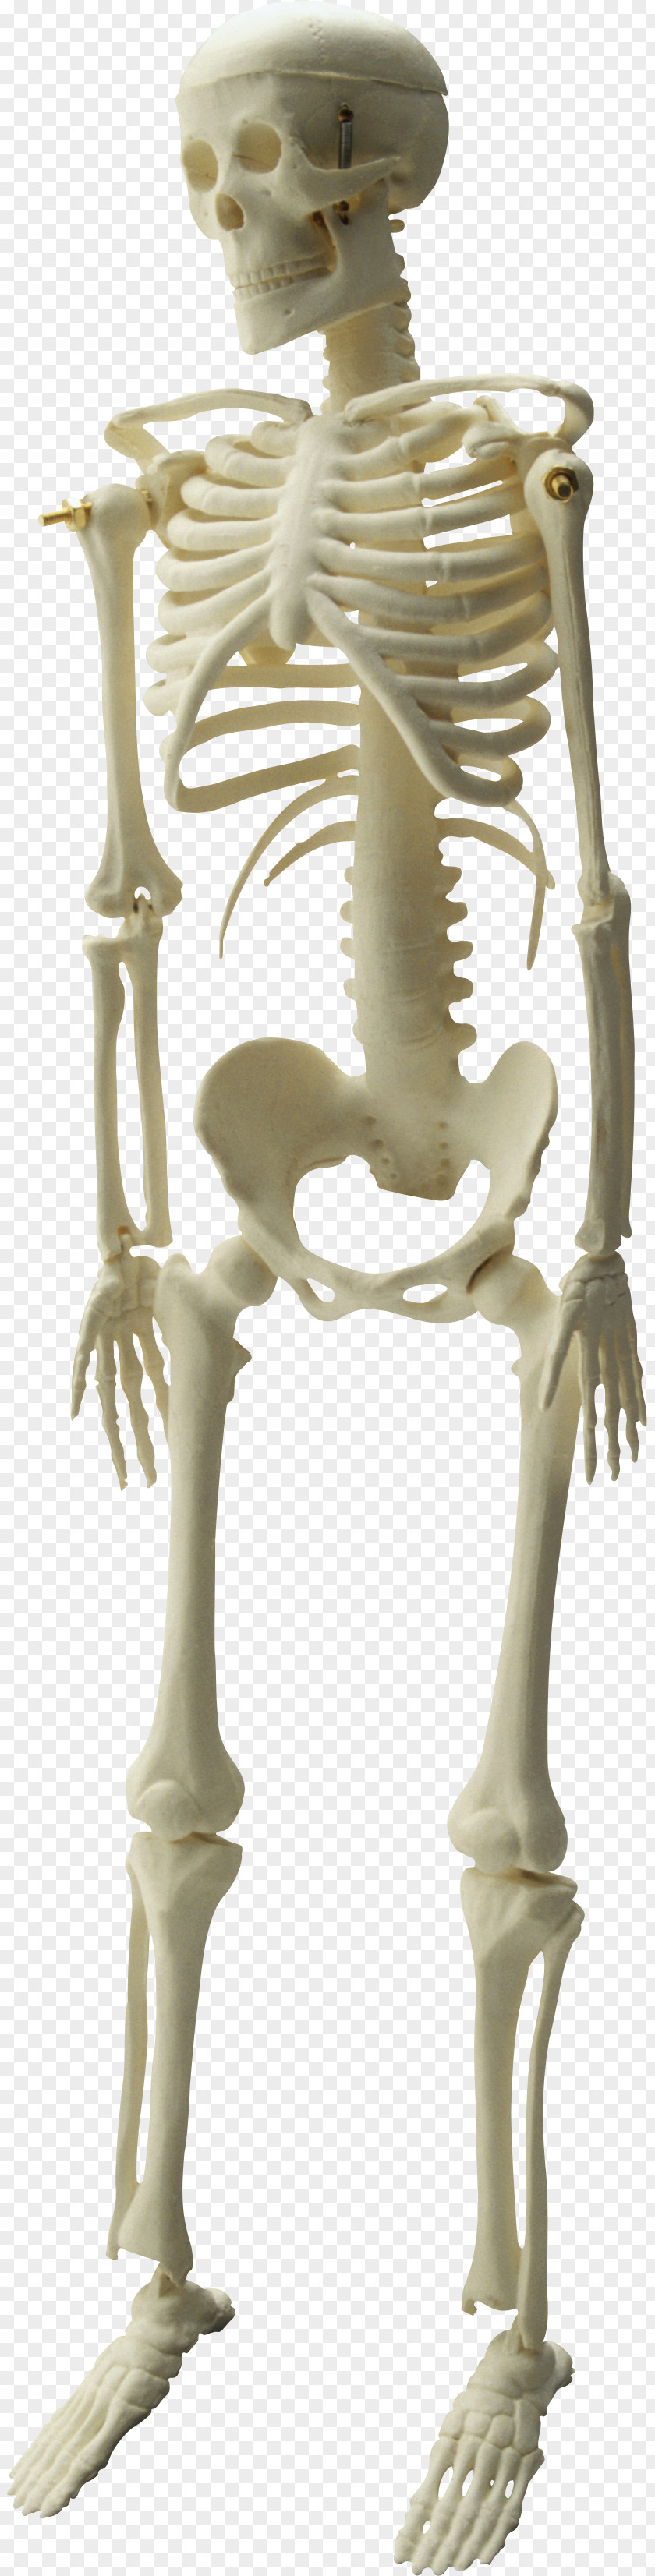 Skeleton Image Human Skull PNG